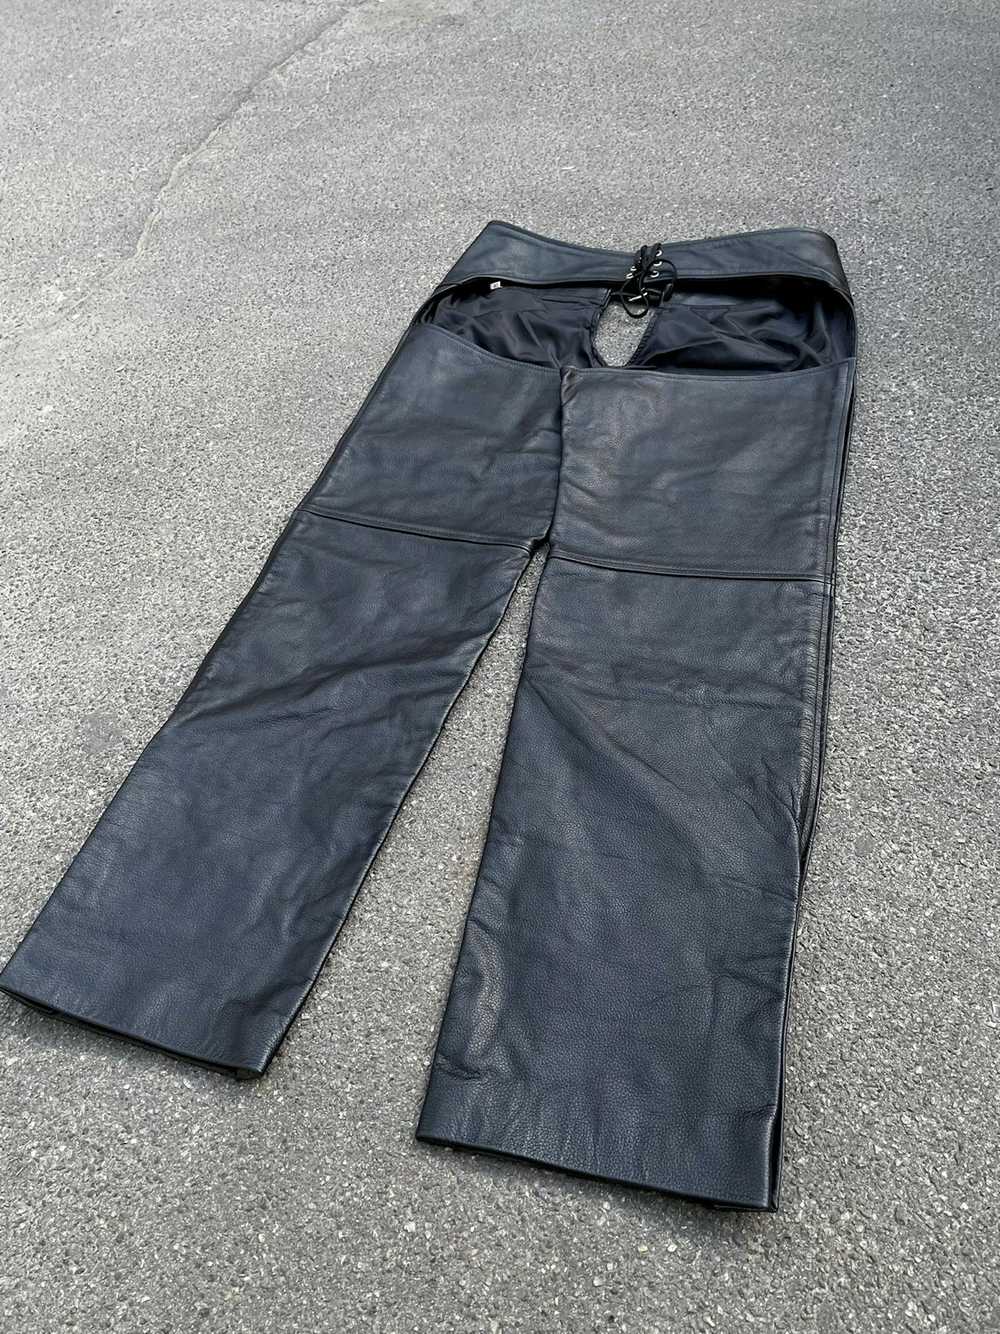 Biker Jeans × Genuine Leather × Vintage Vintage G… - image 9